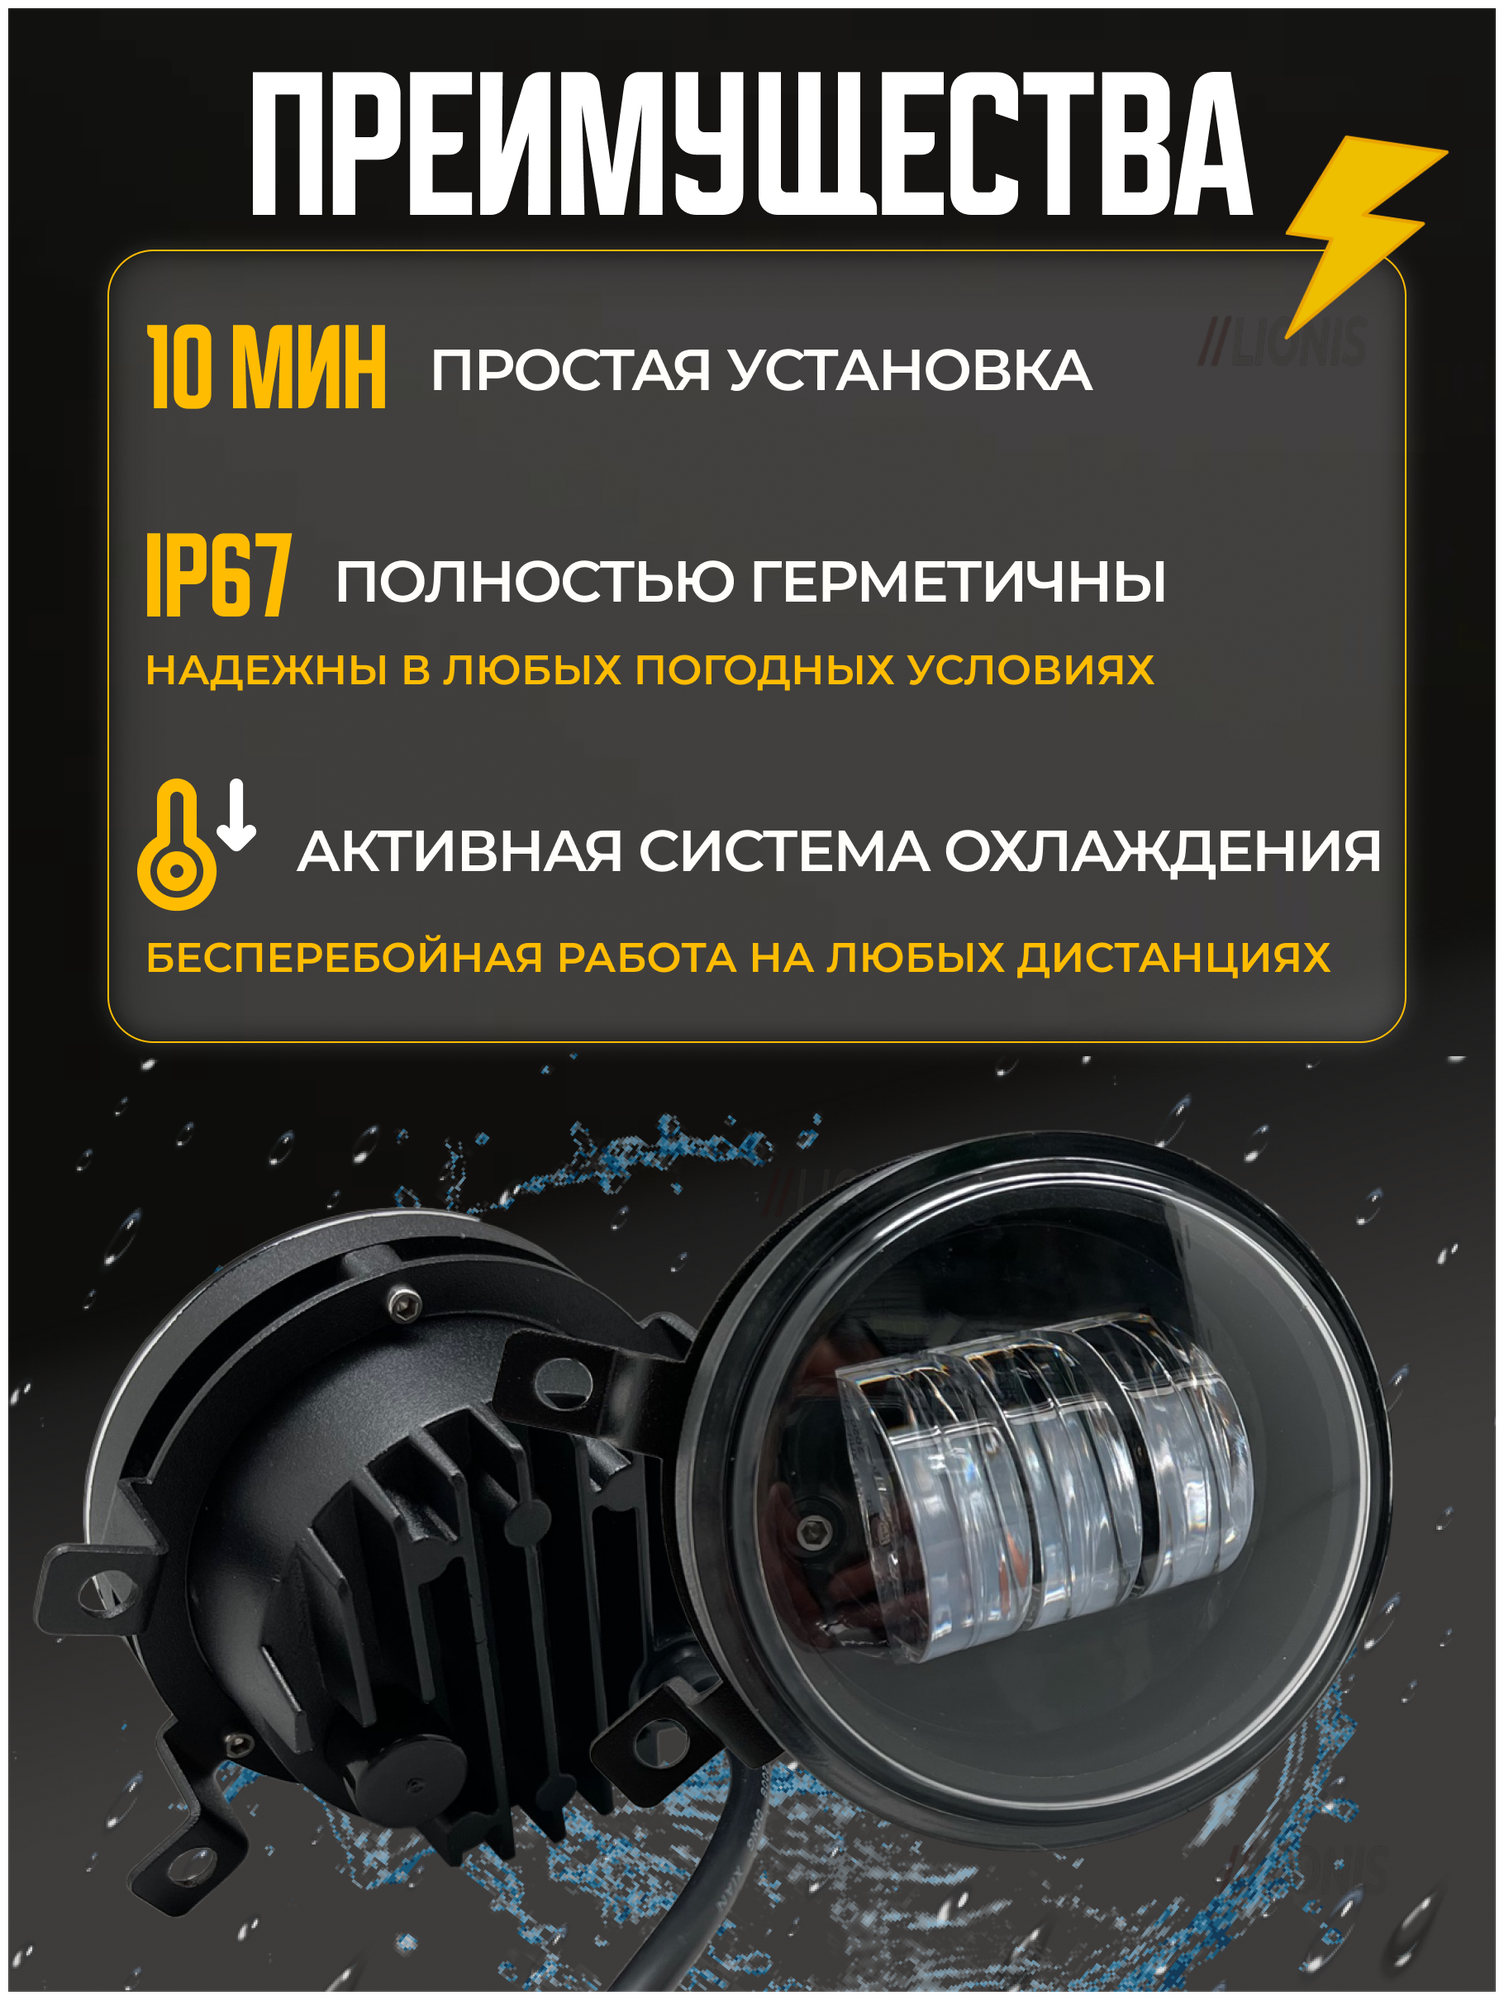 Комплект светодиодных противотуманный фар NEXIA, FORD FOCUS, LOGAN, LANCER 30Вт 2 шт